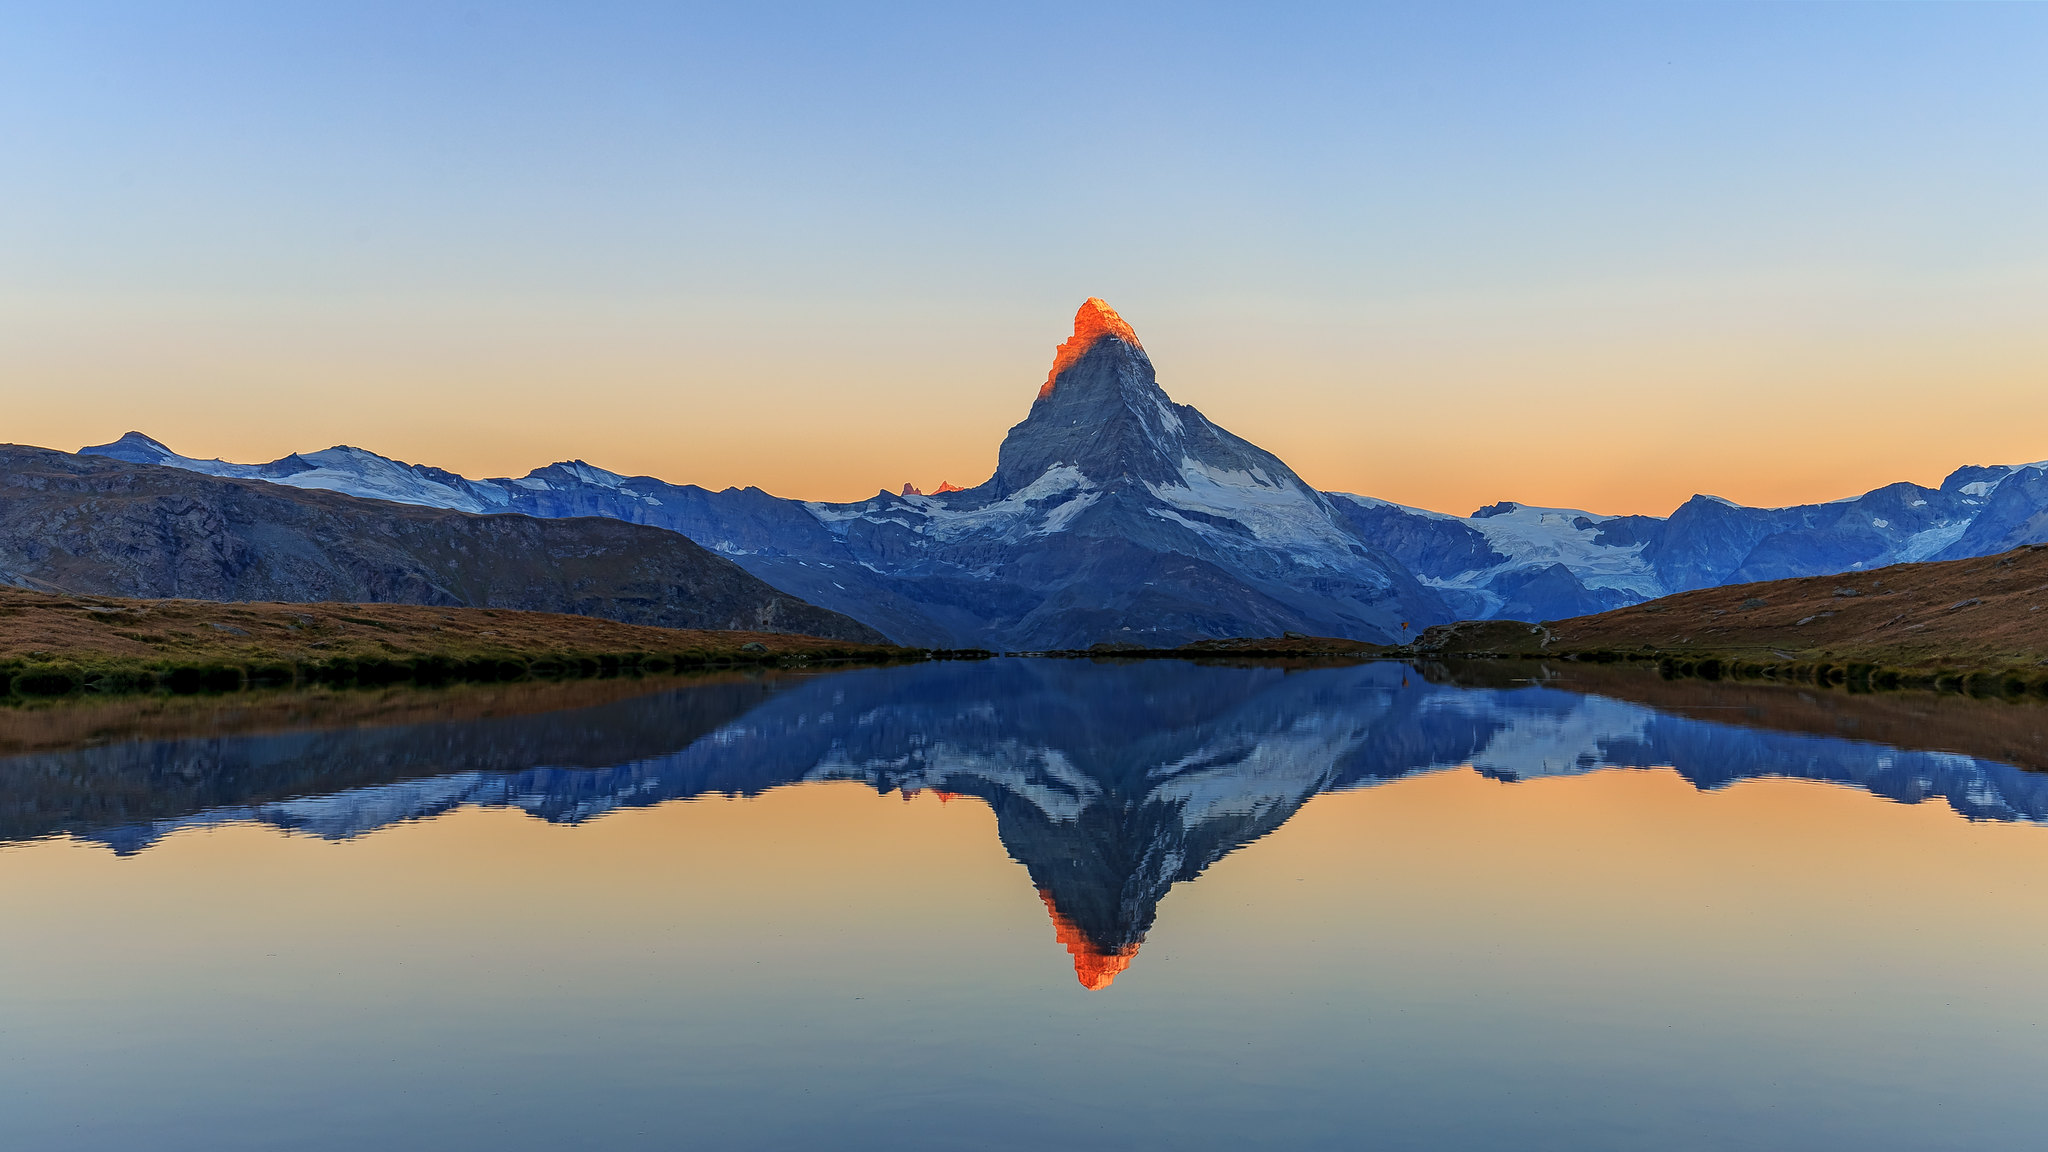 Foto vom Matterhorn mit goldgelber Beleuchtung vom Sonnenaufgang und
Spiegelung in einem See